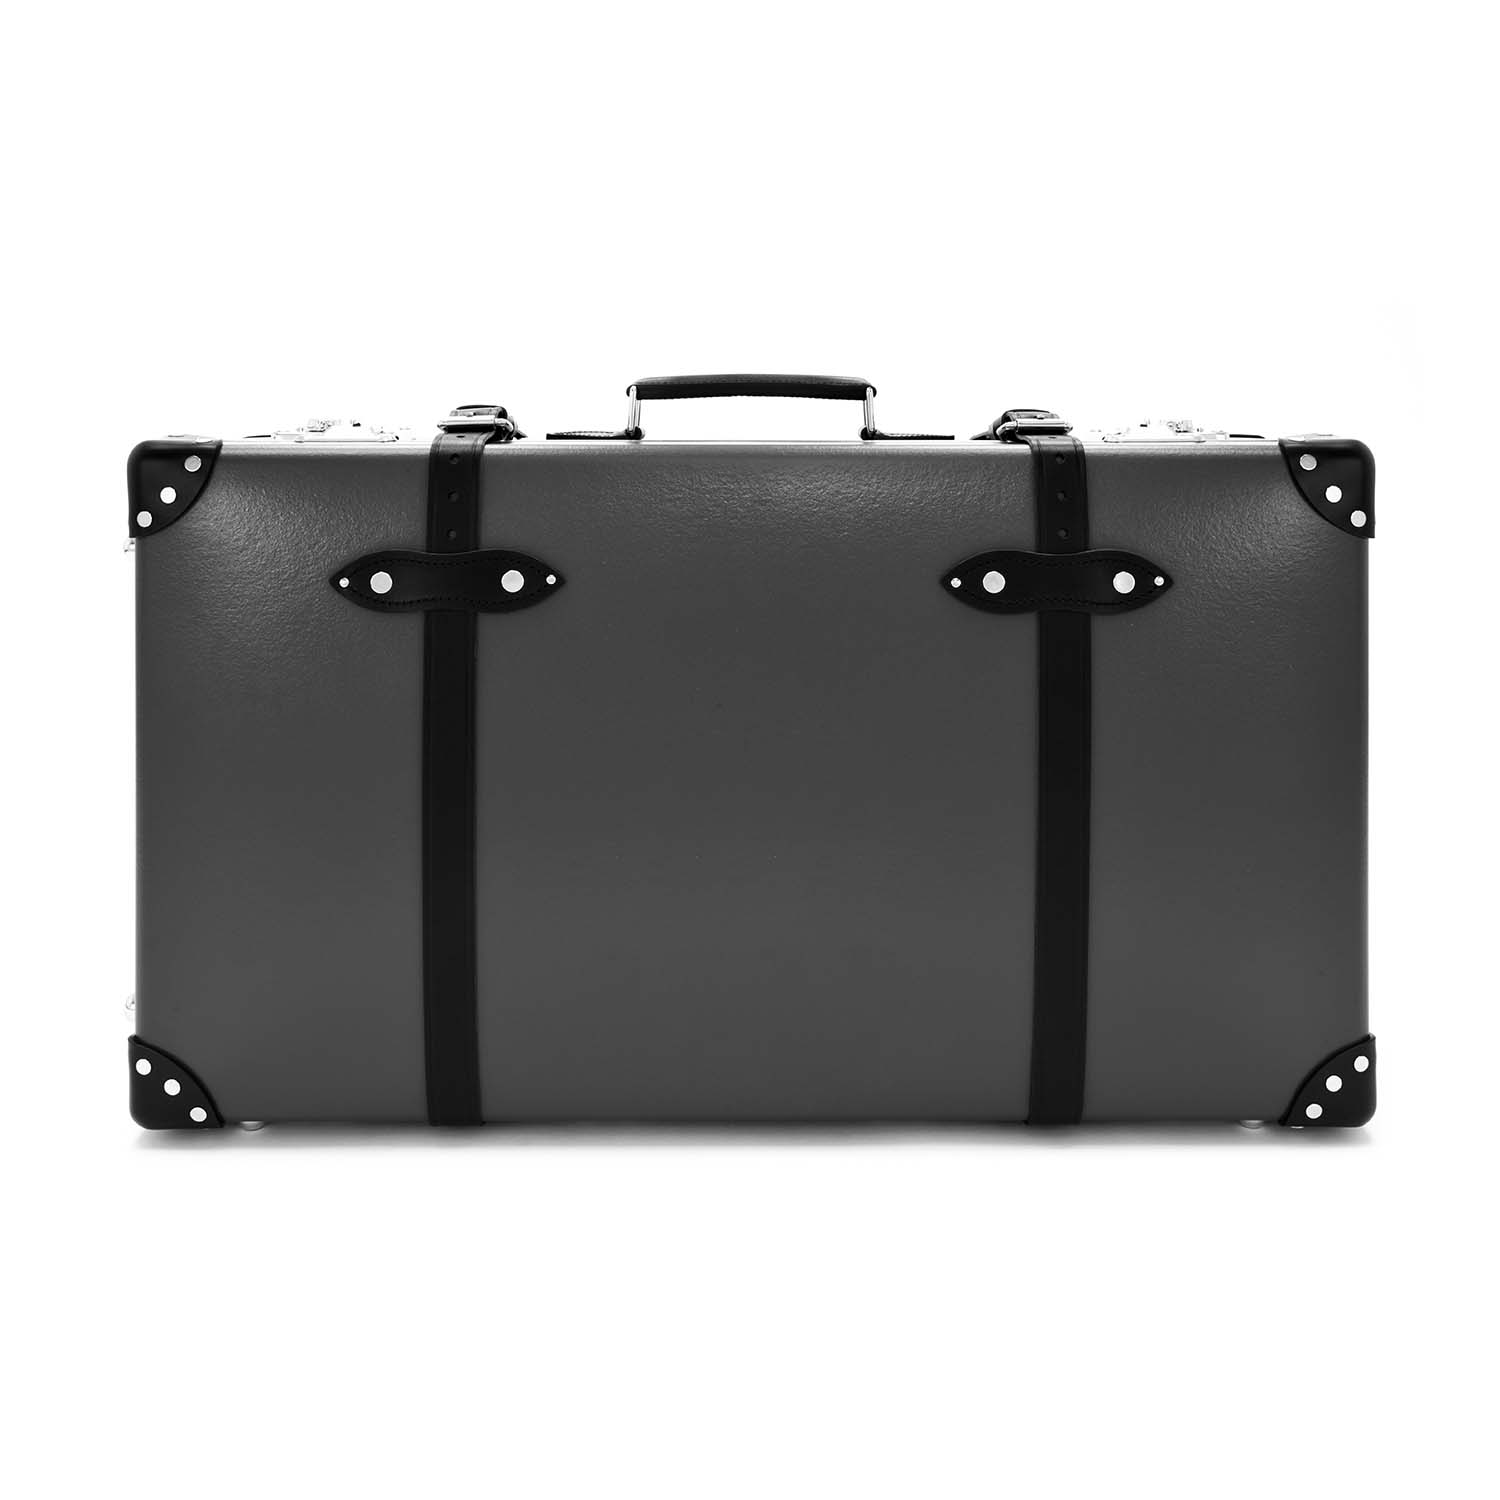 センテナリー · ラージスーツケース | チャコール/ブラック/クロム